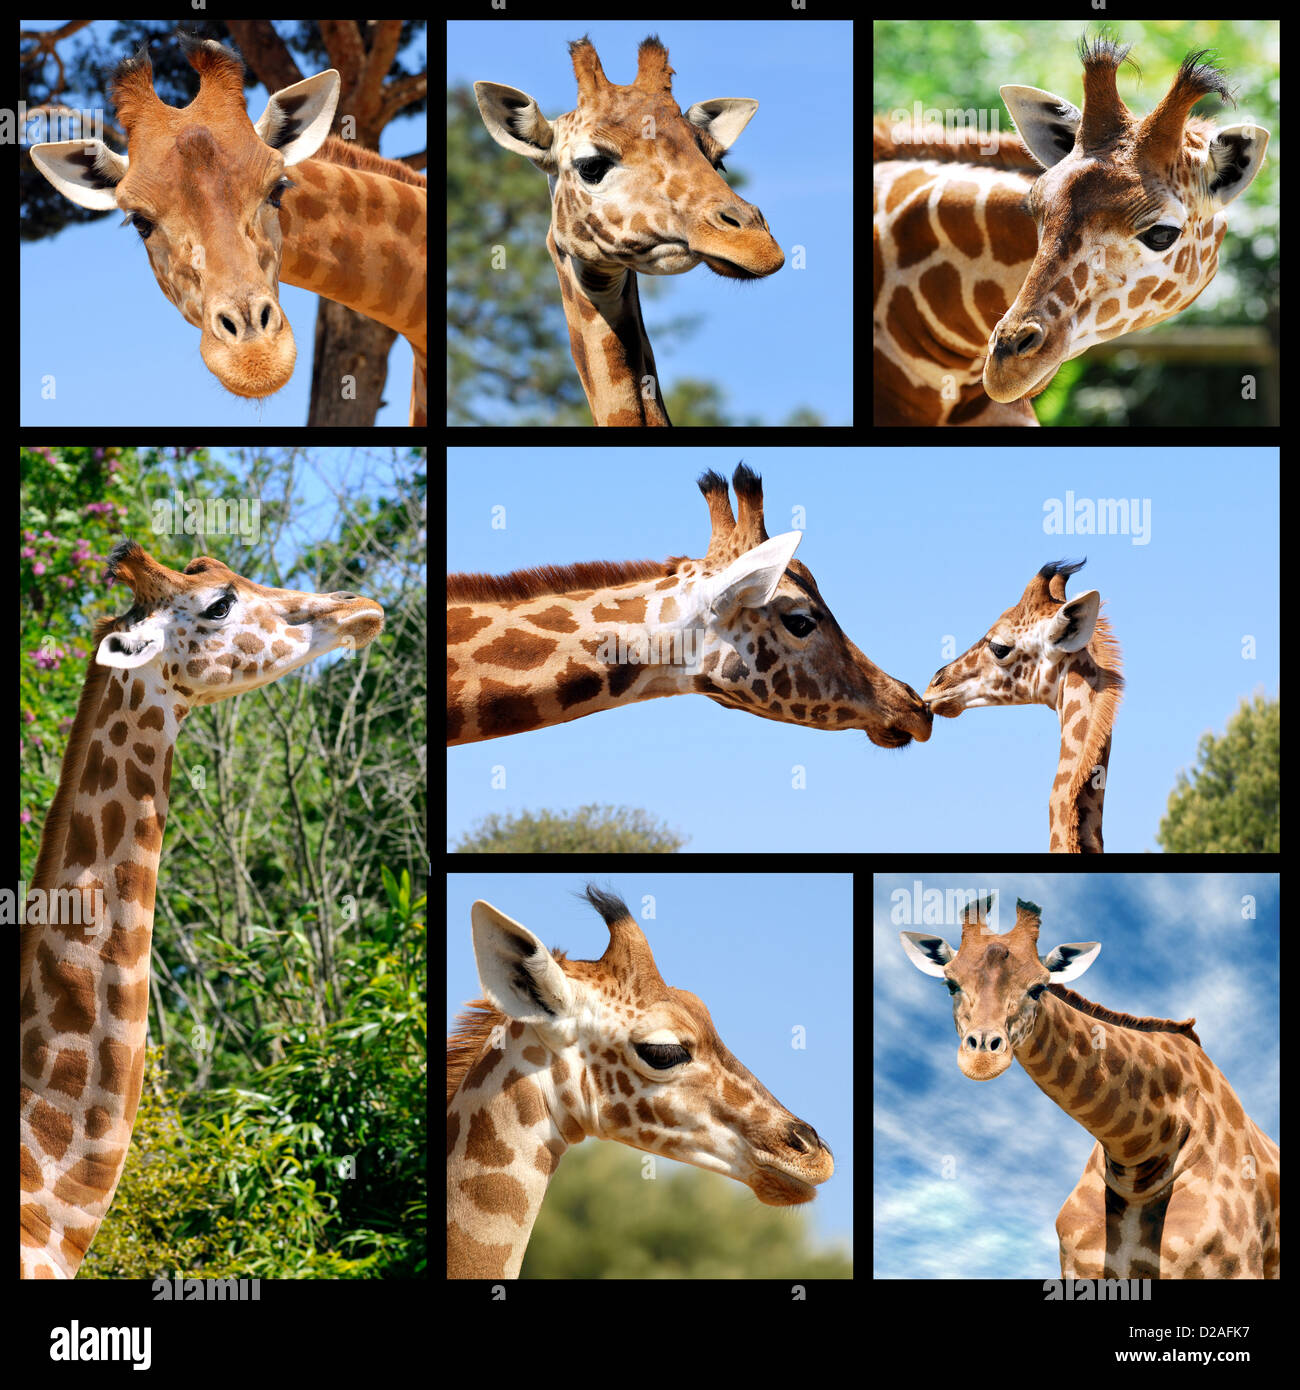 Seven photos of giraffes (Giraffa camelopardalis) Stock Photo